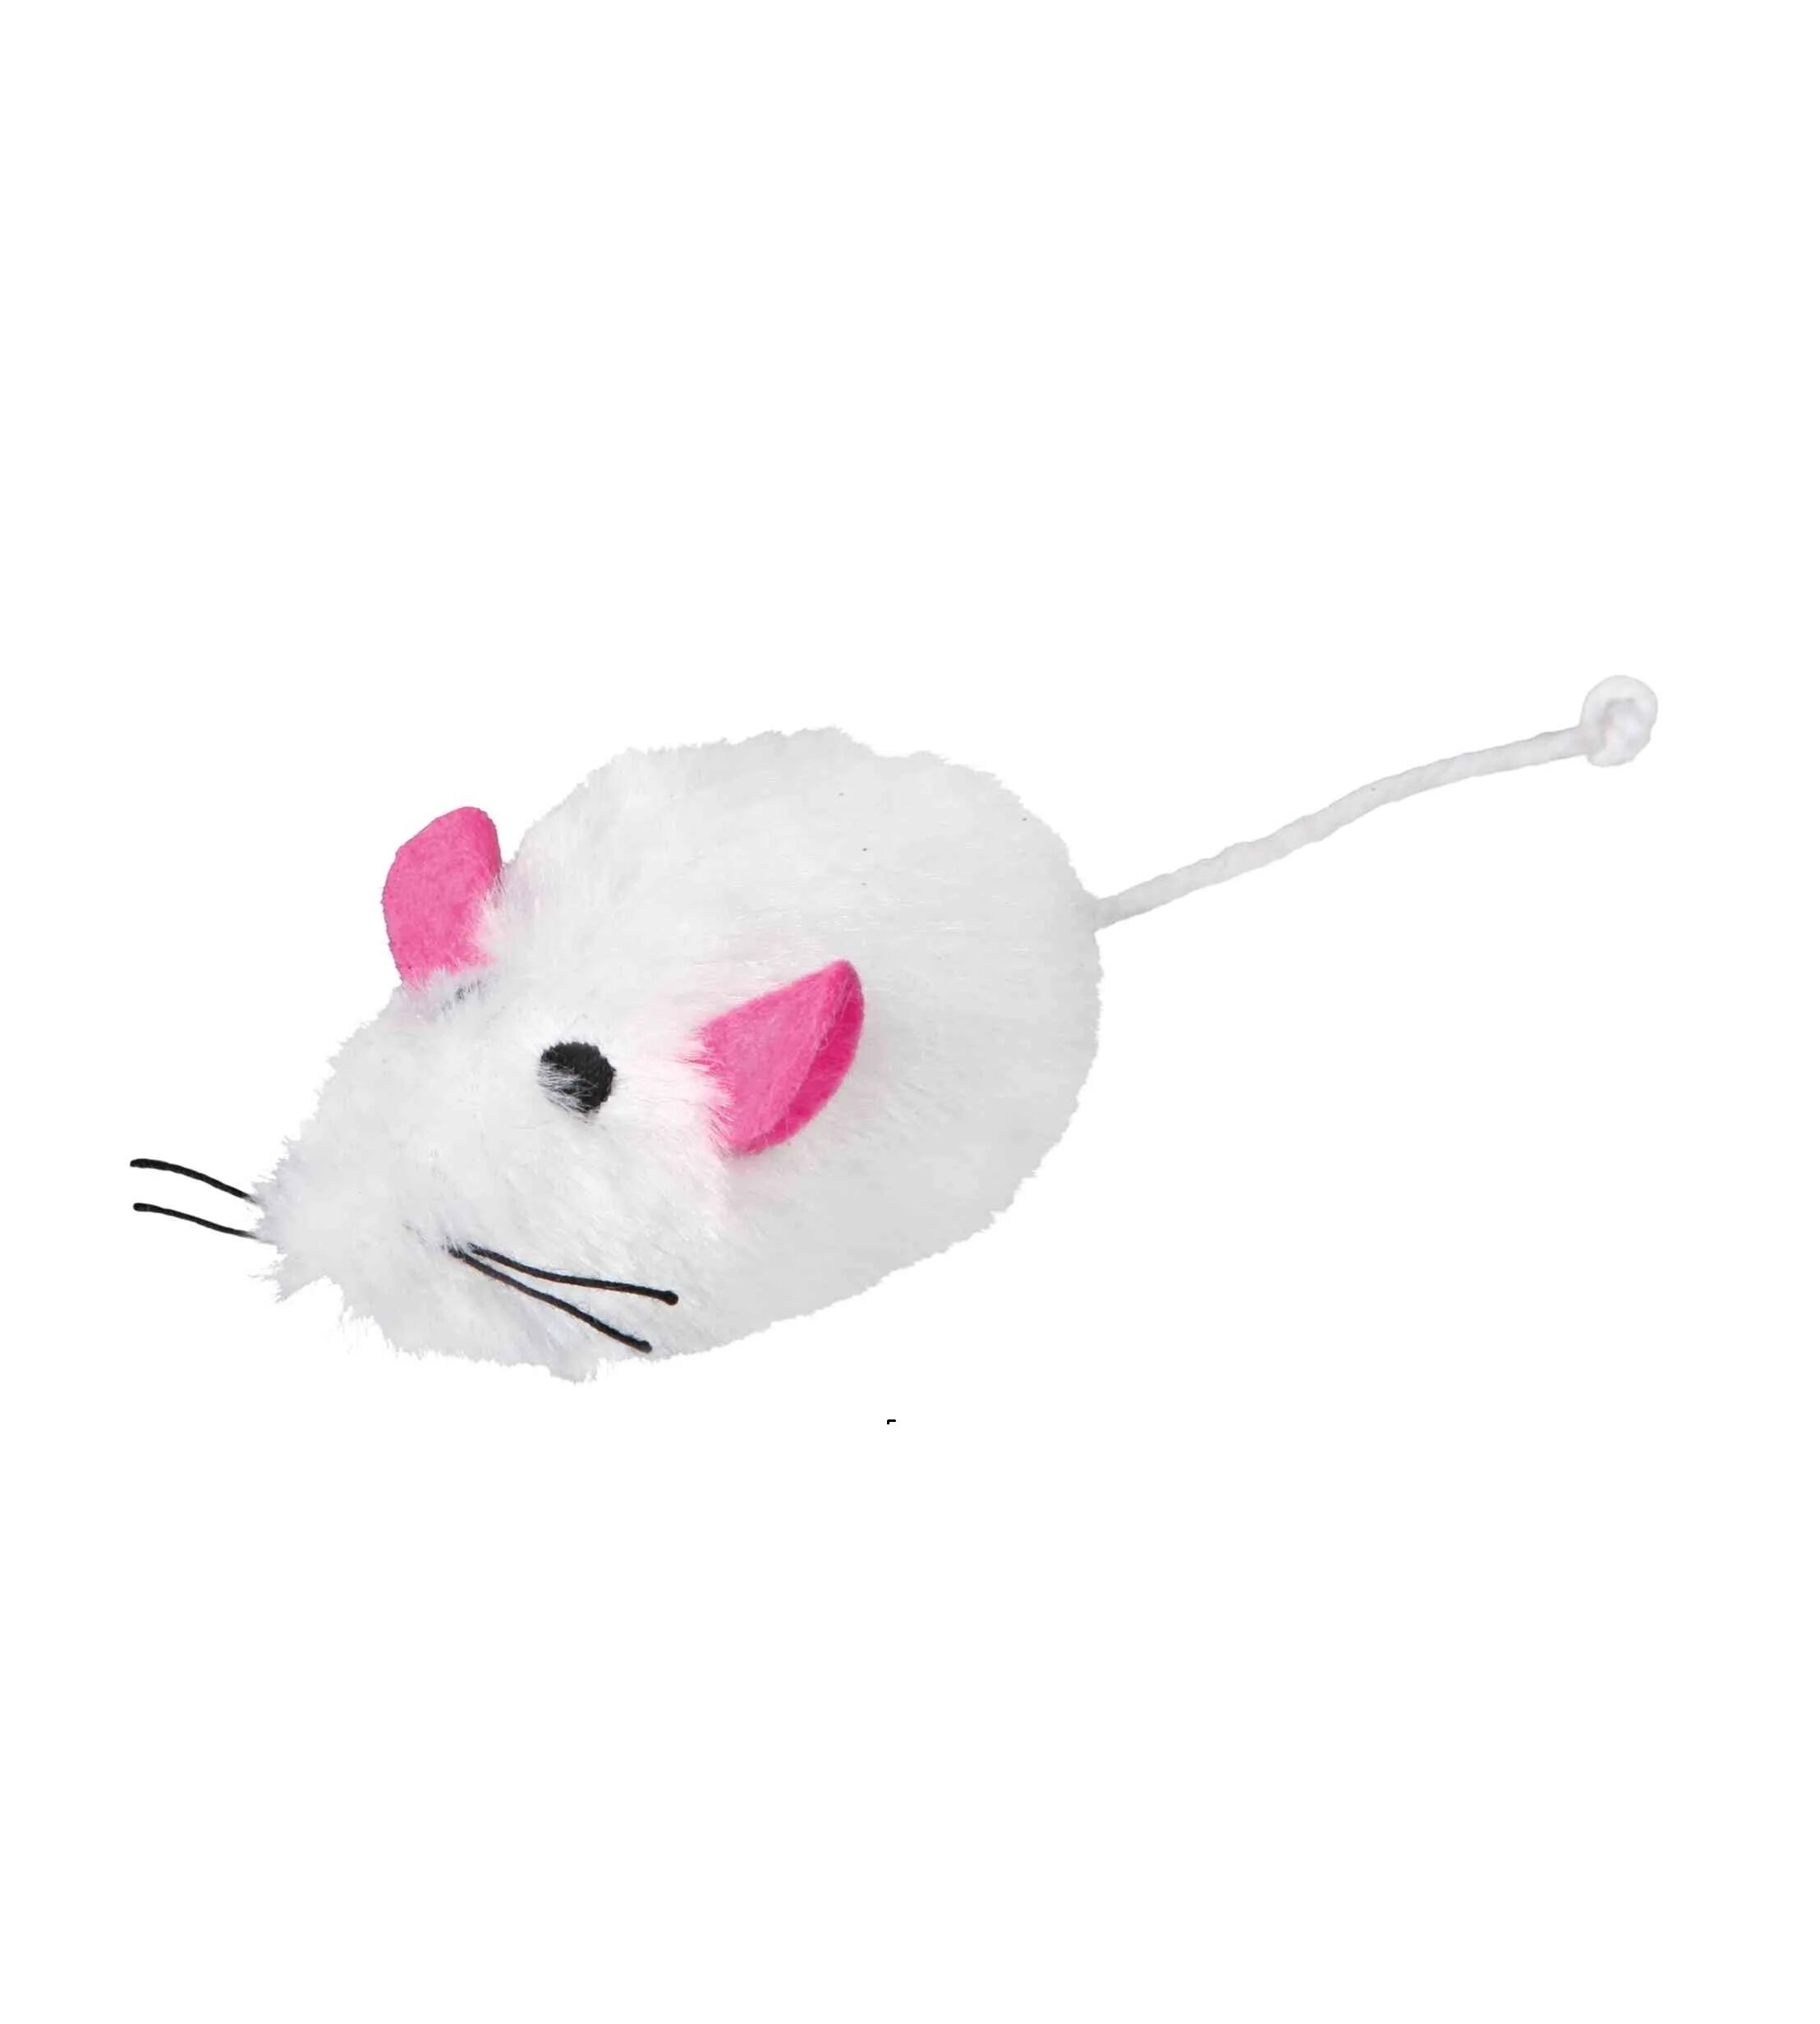 Мышь Trixie плюш. Trixie игрушка мышка в ловушке. Игрушка для кошек Trixie Squeaky Mouse. Мышка с пищалкой для кошек Trixie. Кошечку мышку